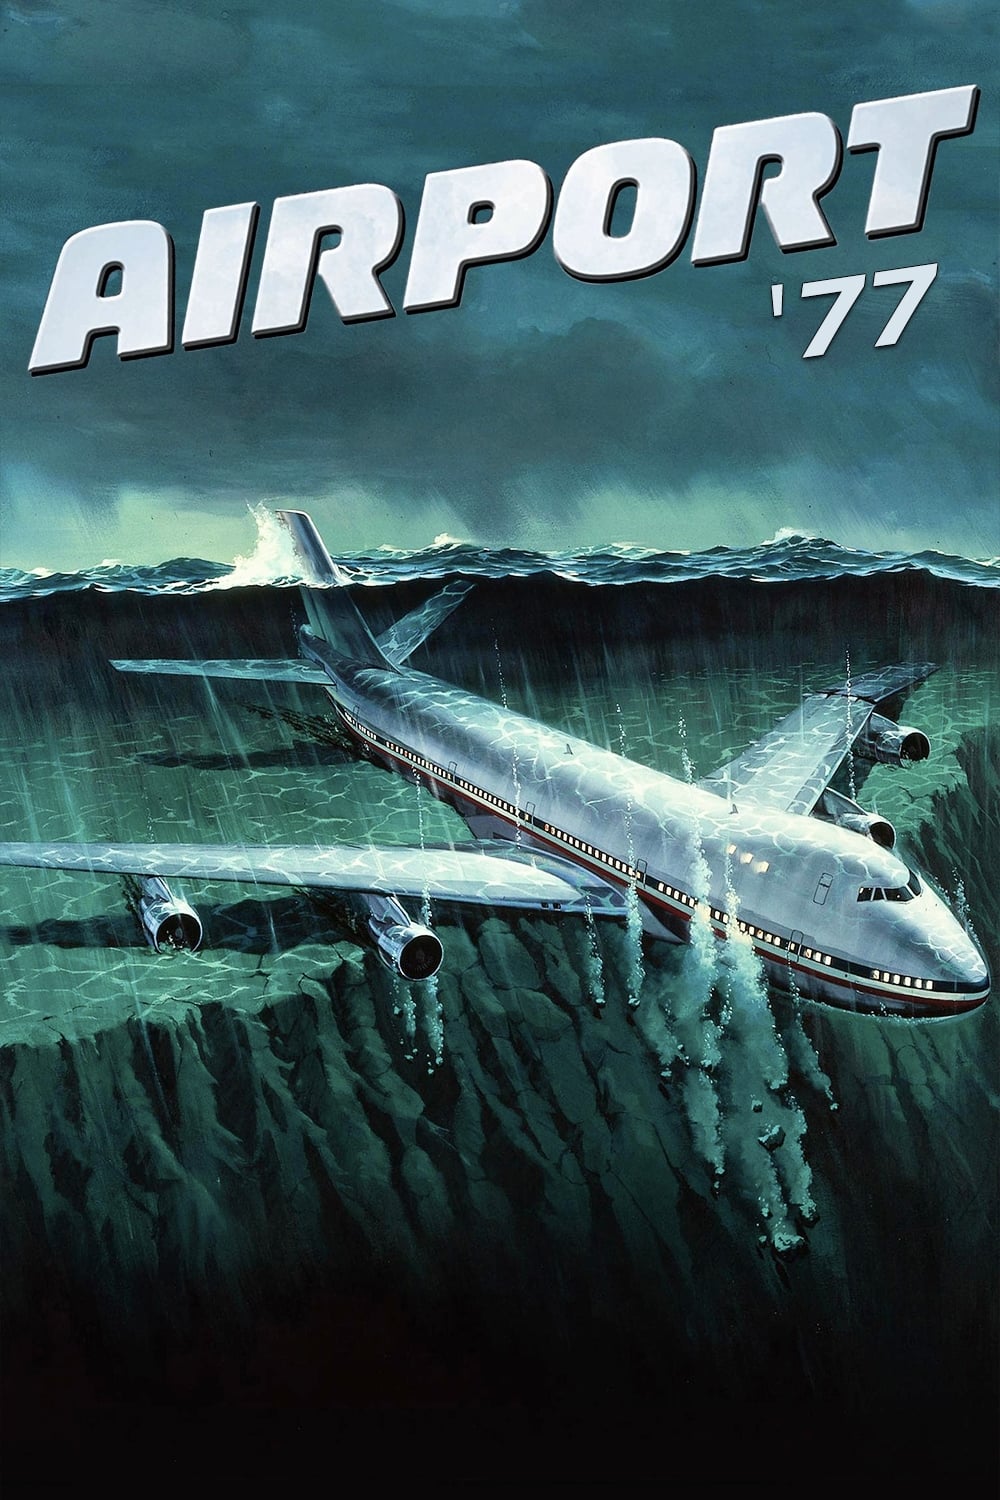 Aeroporto 77 (1977)